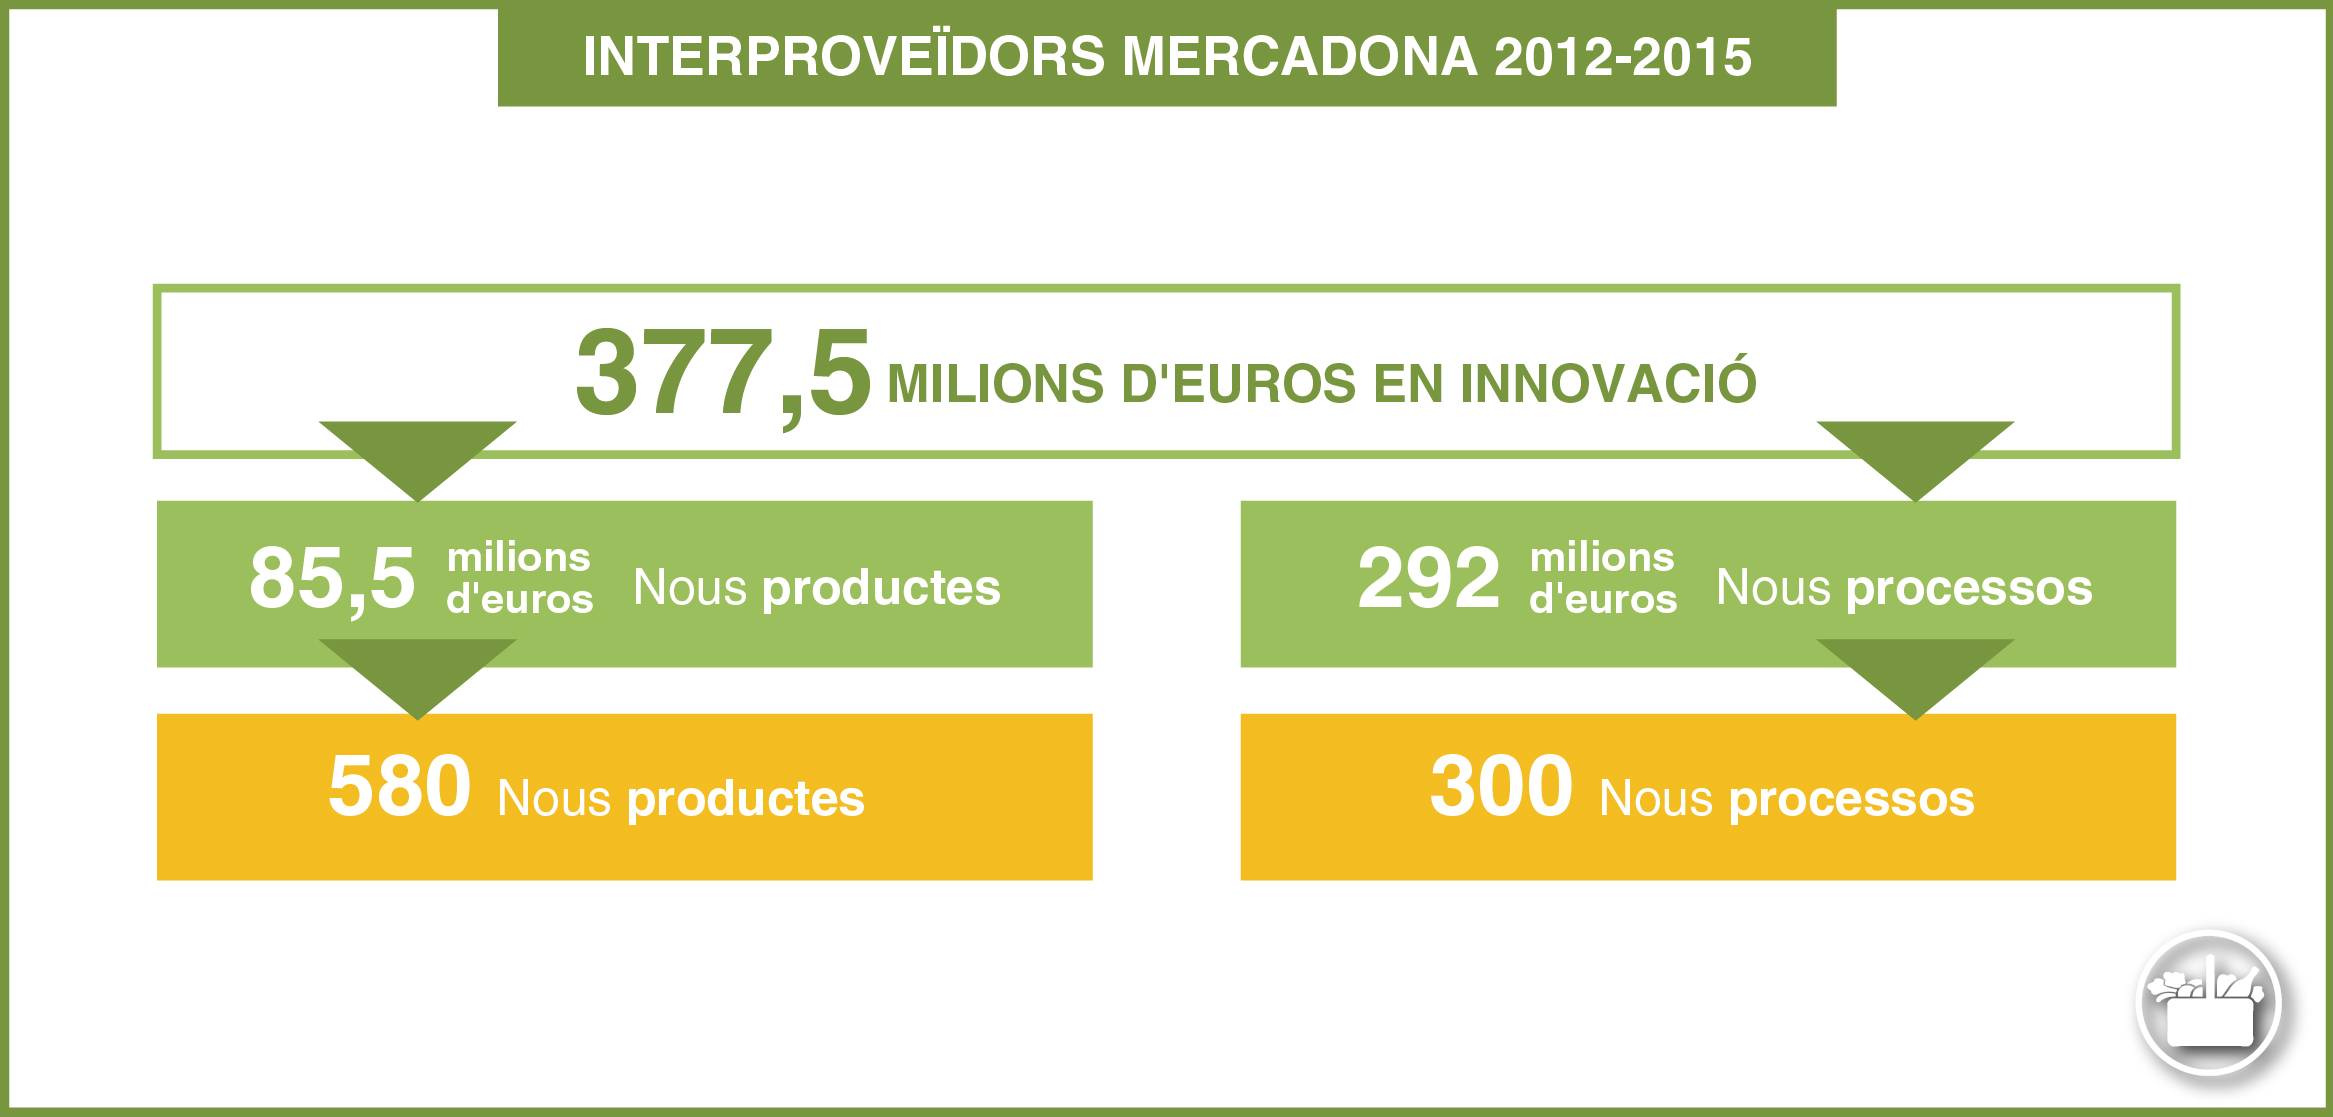 Interproveïdors Mercadona 2012-2015